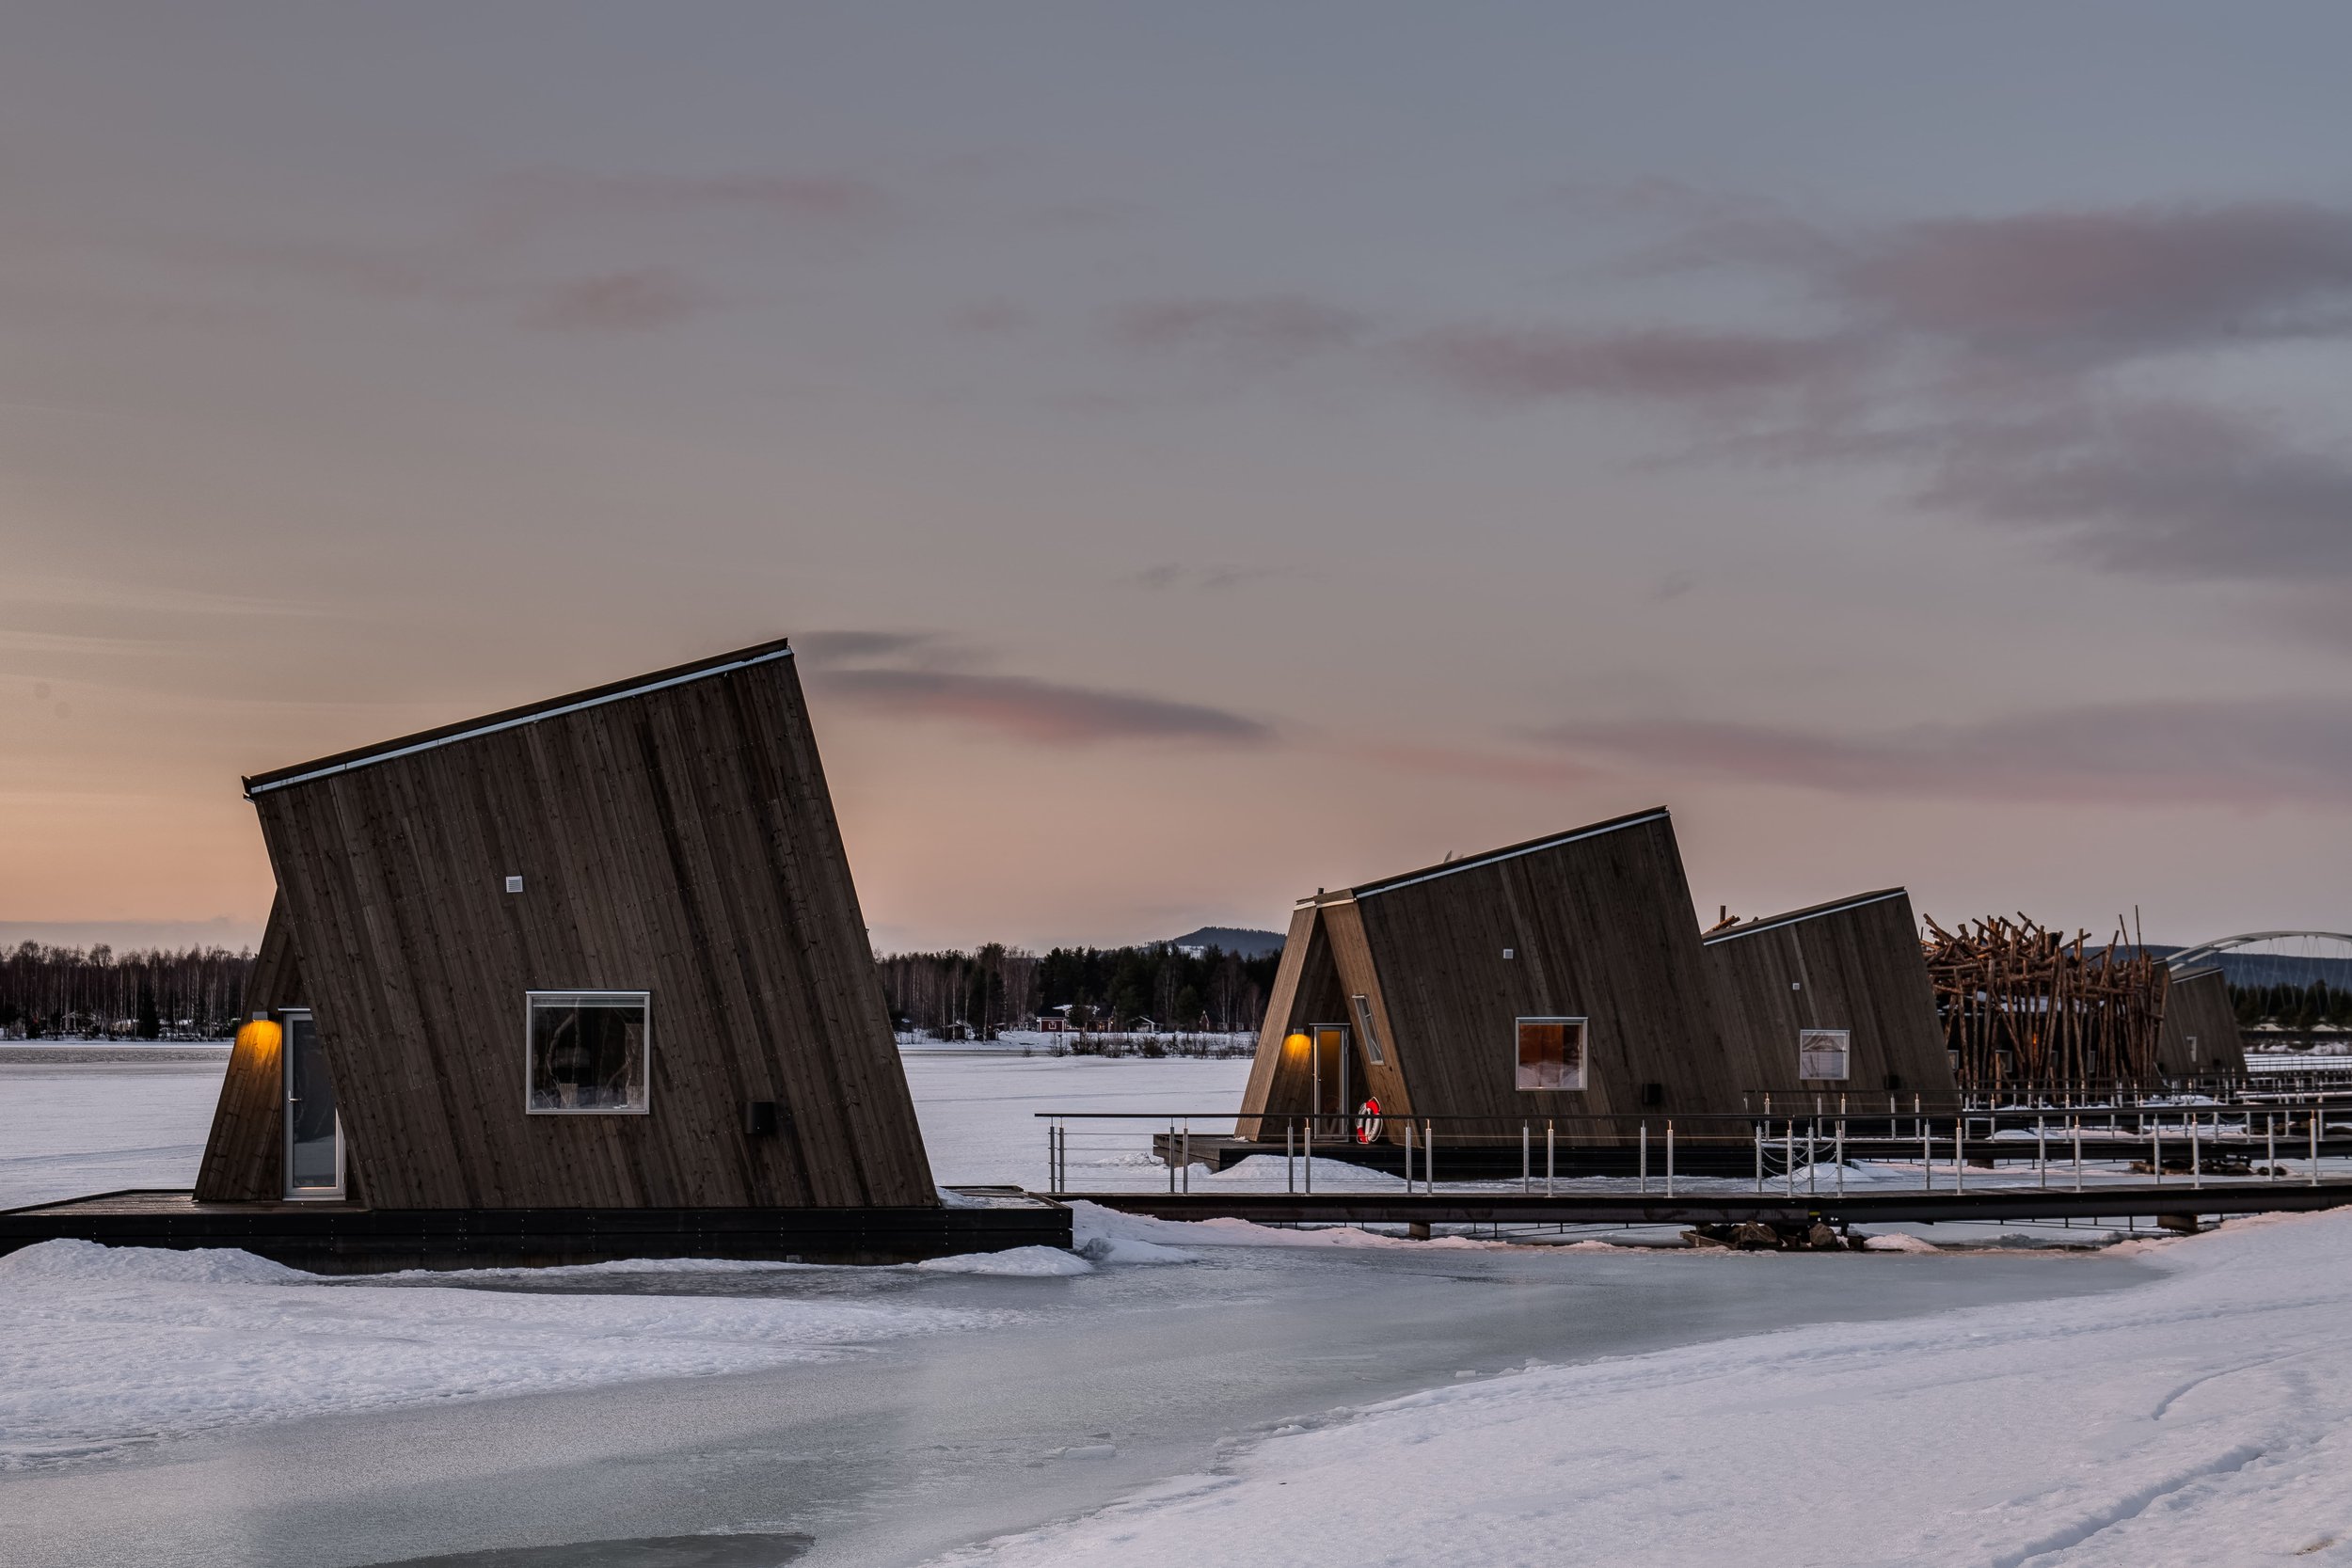 Artic bath huts at night